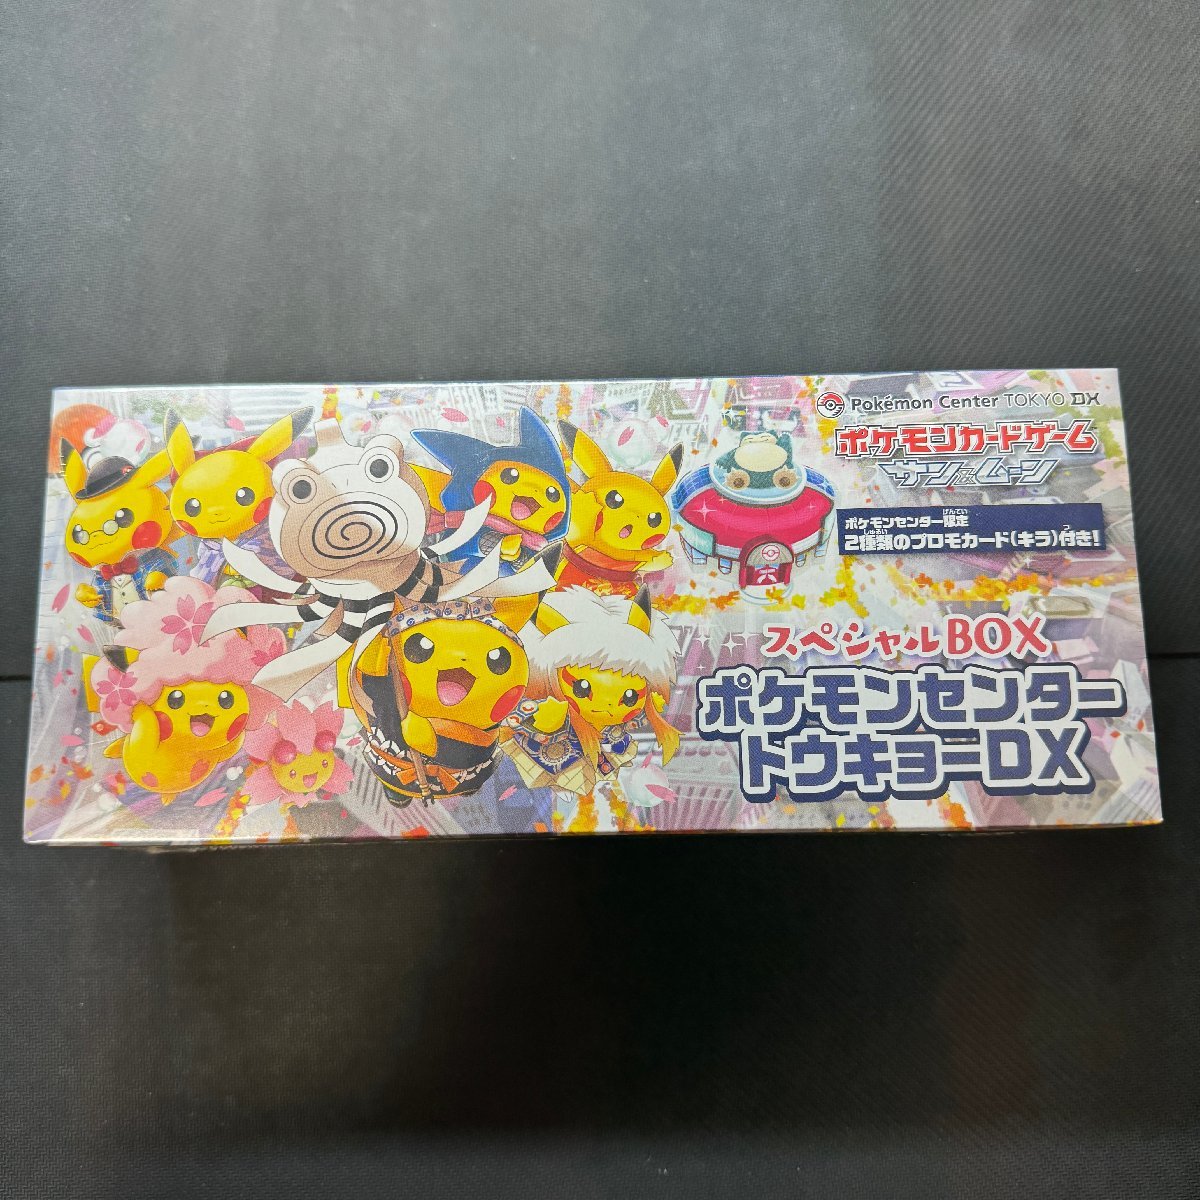 スペシャルBOX ポケモンセンタートウキョーDX 未開封 シュリンク付き BOX 袴姿のピカチュウ ポケカ Japanese Pokemon Card_画像1